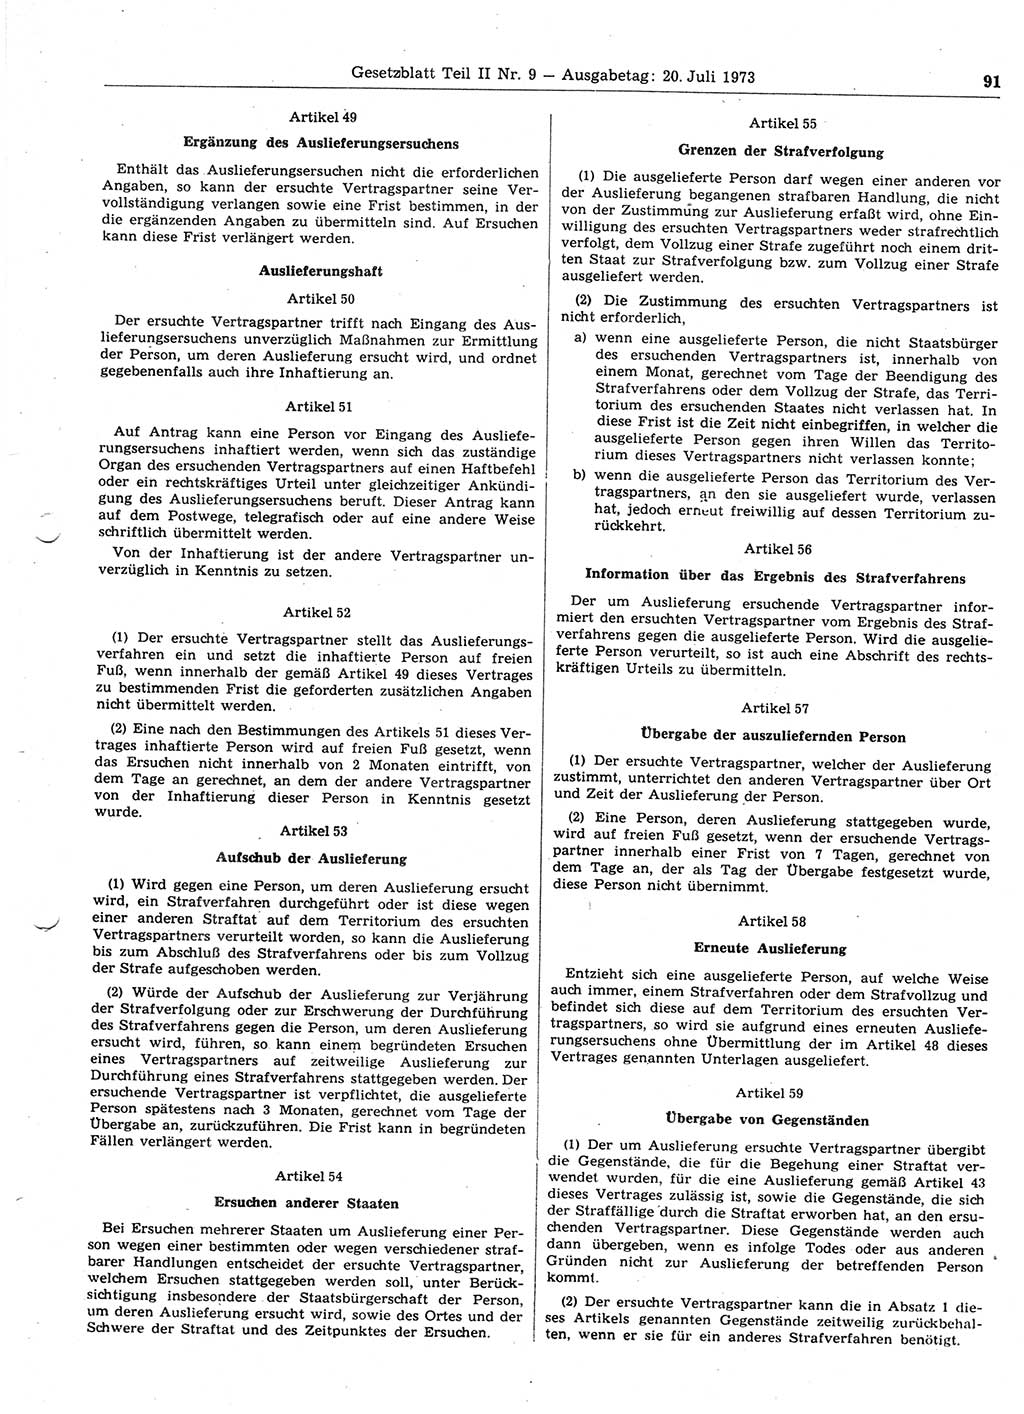 Gesetzblatt (GBl.) der Deutschen Demokratischen Republik (DDR) Teil ⅠⅠ 1973, Seite 91 (GBl. DDR ⅠⅠ 1973, S. 91)